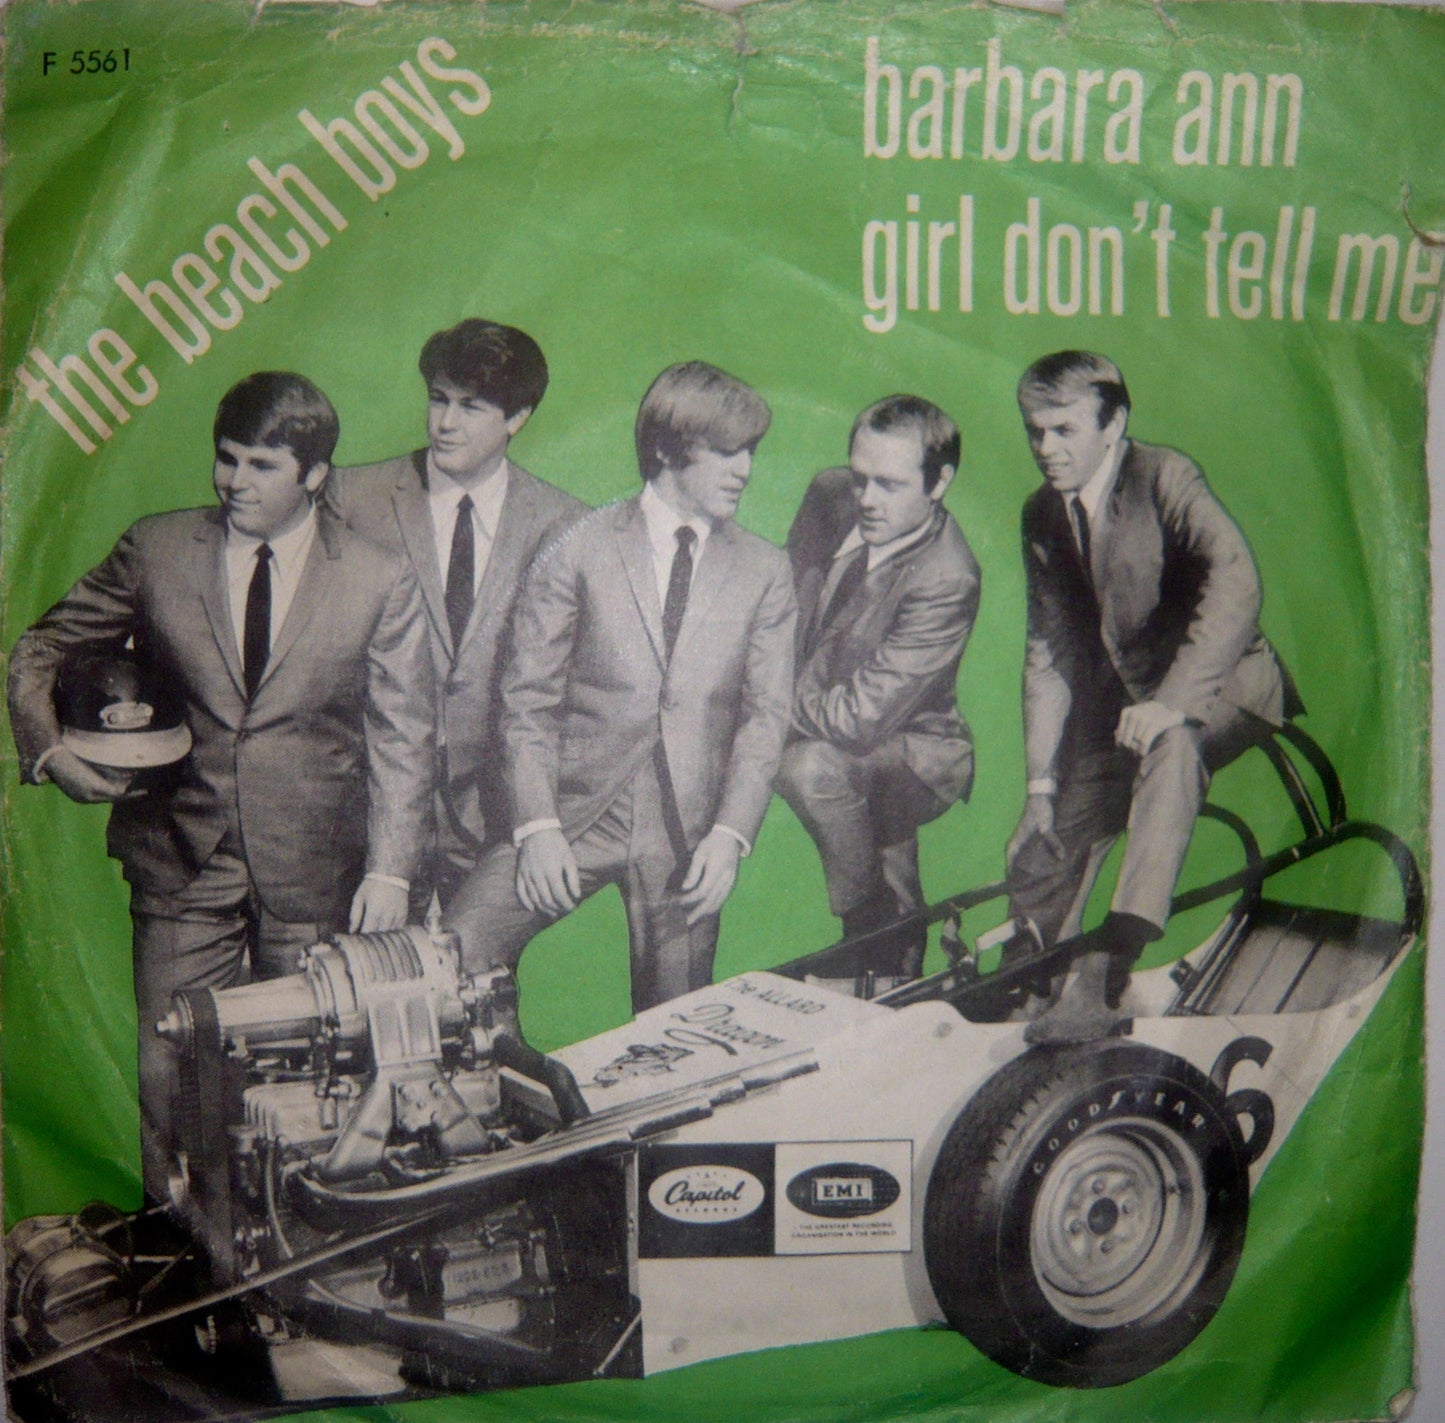 Beach Boys - Barbara Ann.